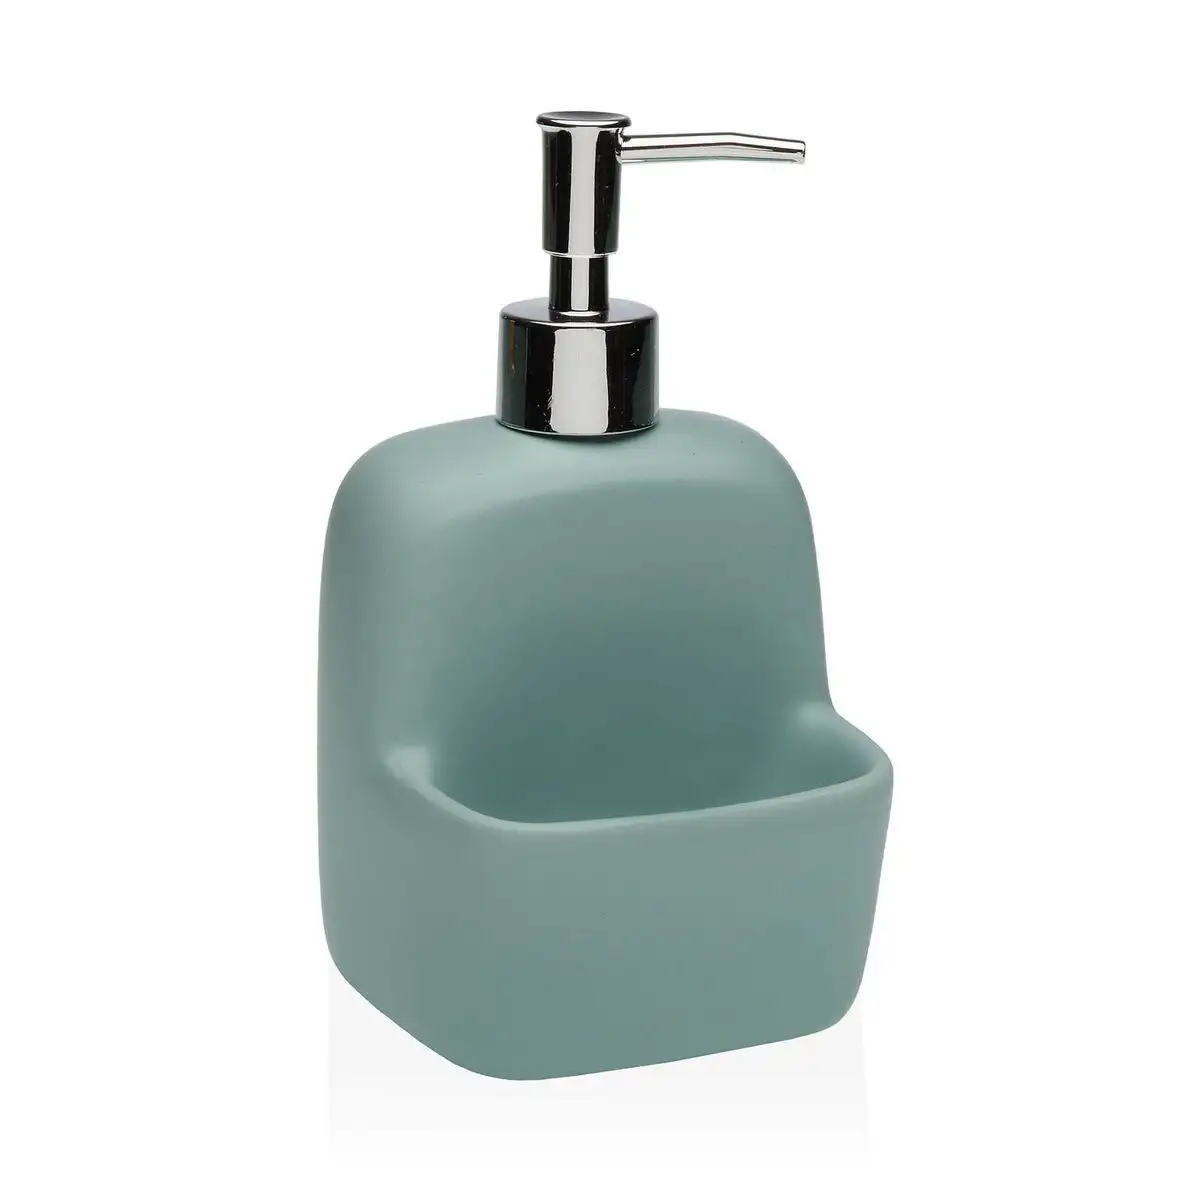 Distributeur de savon versa bleu ceramique_6468. DIAYTAR SENEGAL - Là où l'Élégance Devient un Mode de Vie. Naviguez à travers notre gamme et choisissez des produits qui apportent une touche raffinée à votre quotidien.